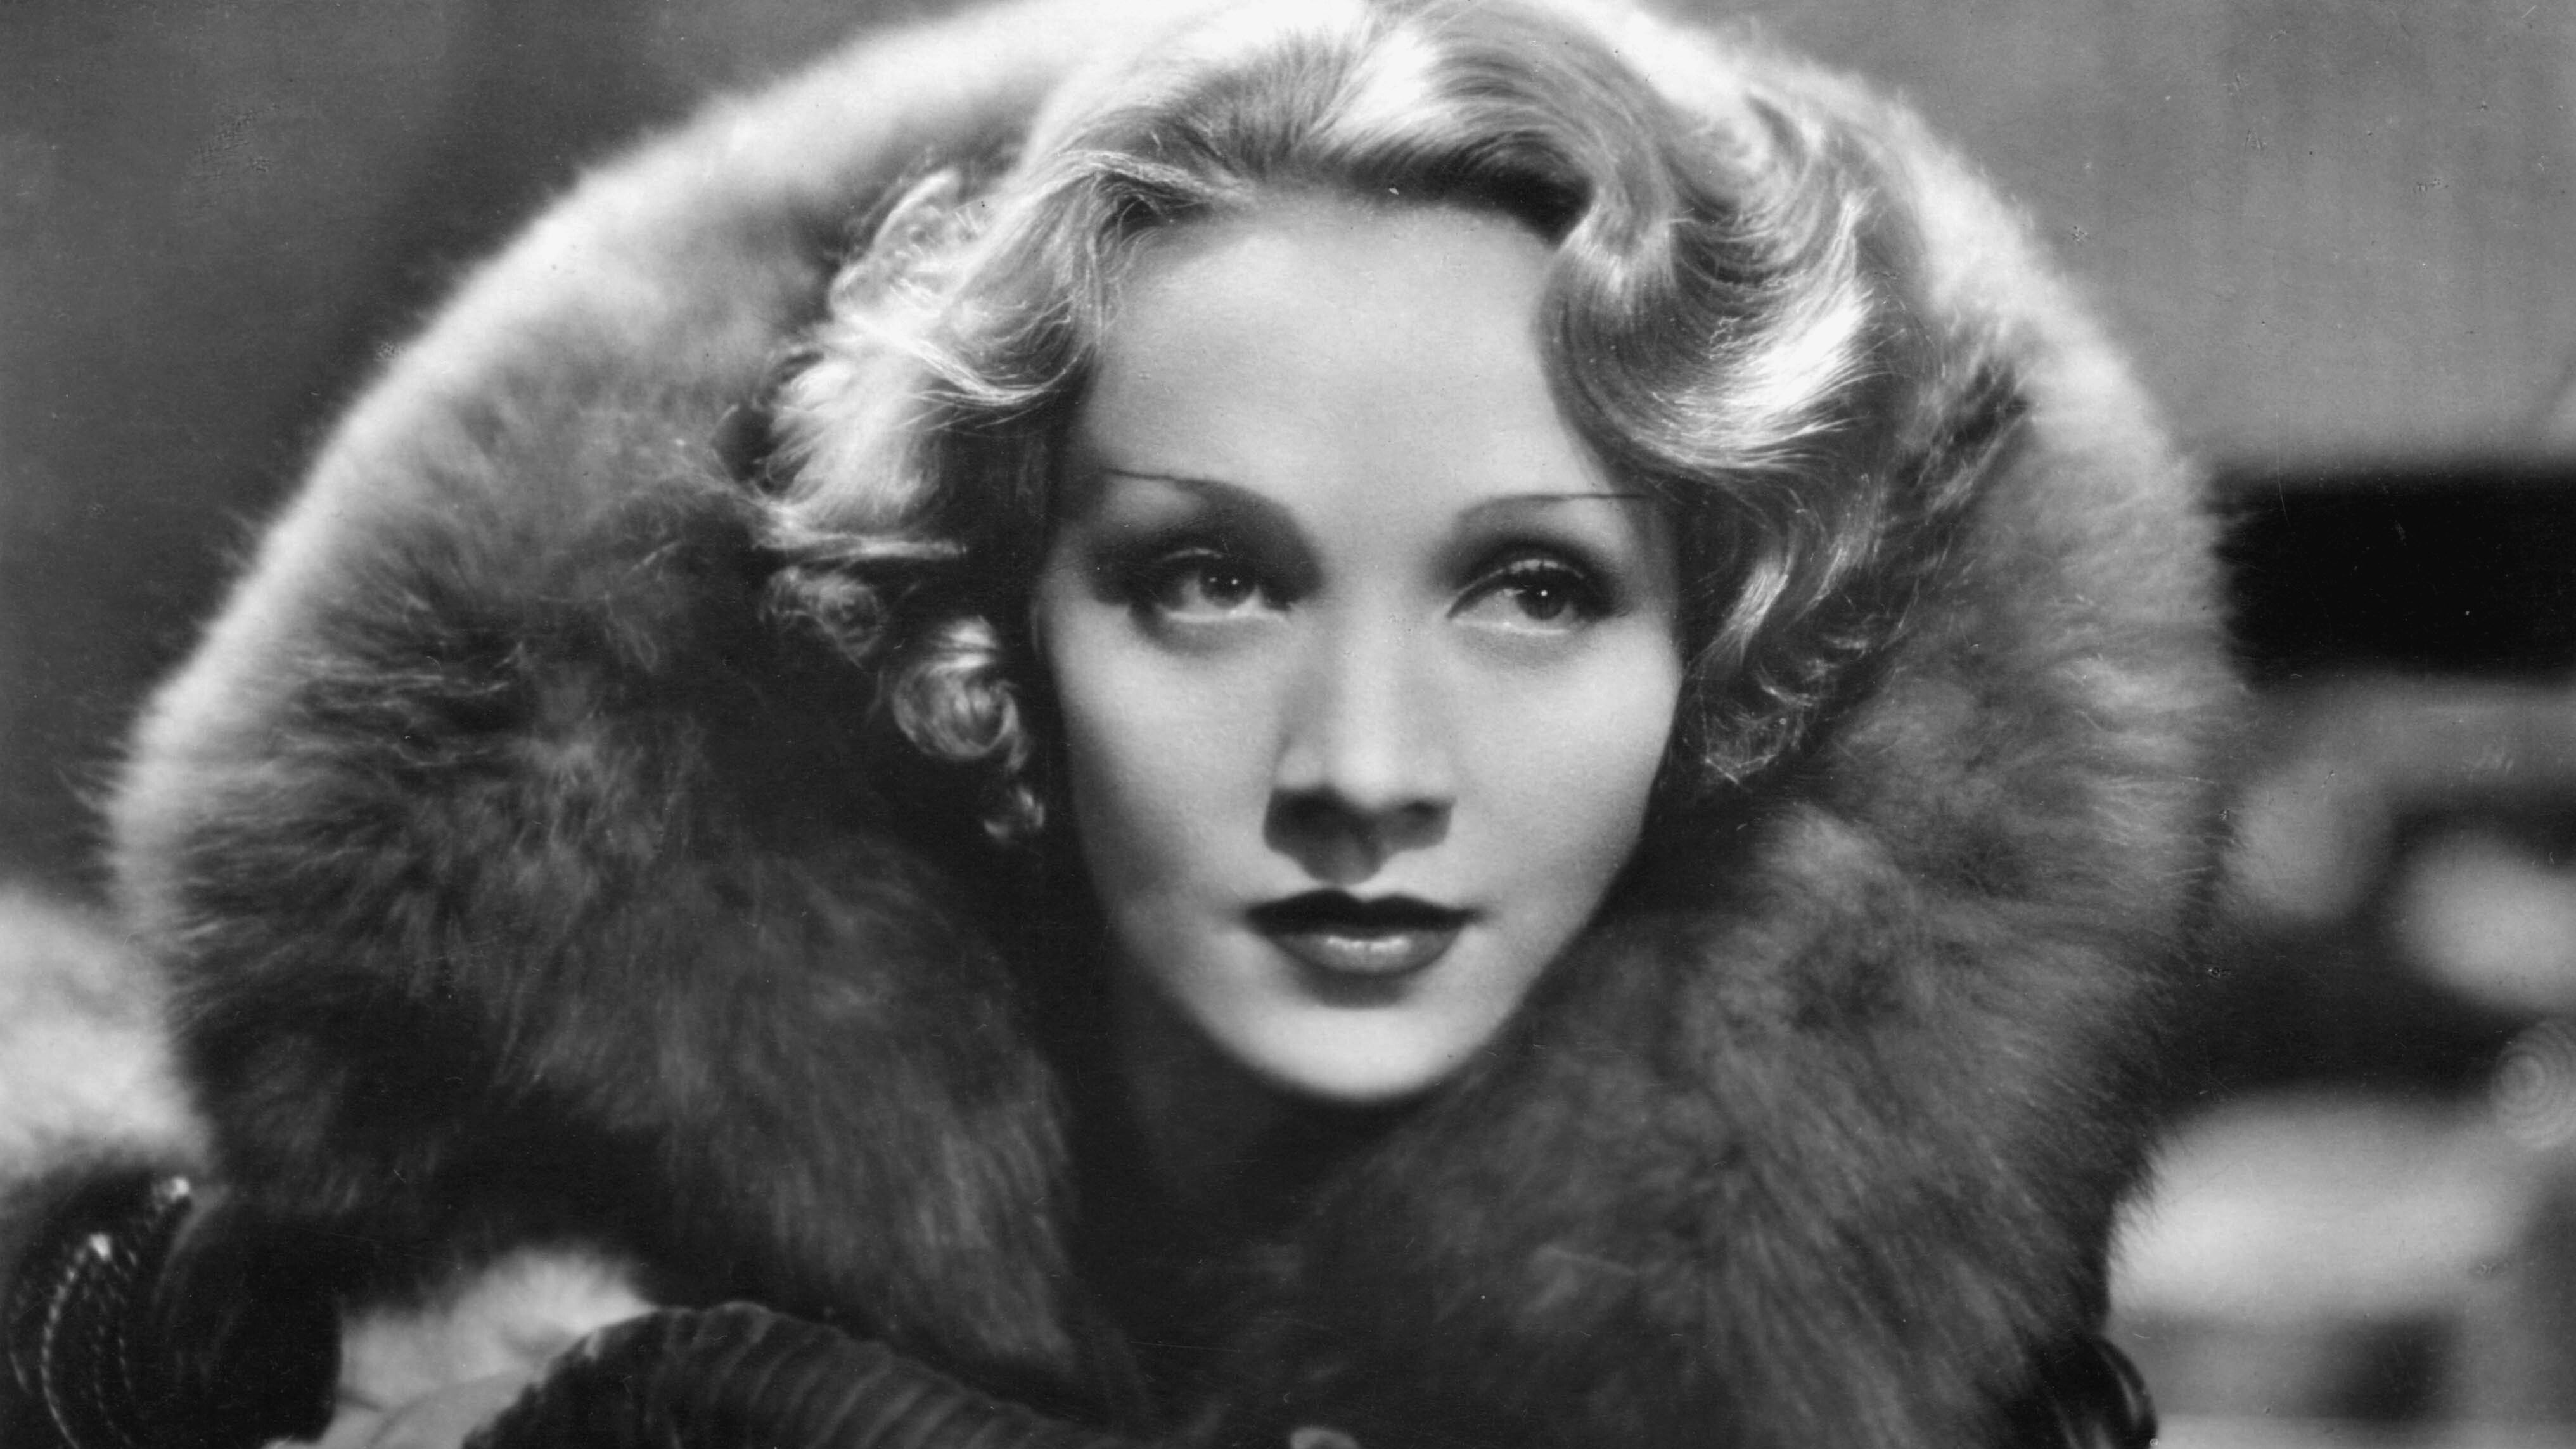 1932 wurde diese Aufnahme von Marlene Dietrich gemacht - zwei Jahre zuvor wurde sie durch einen Film zum internationalen Superstar und zur Stilikone ihrer Zeit.